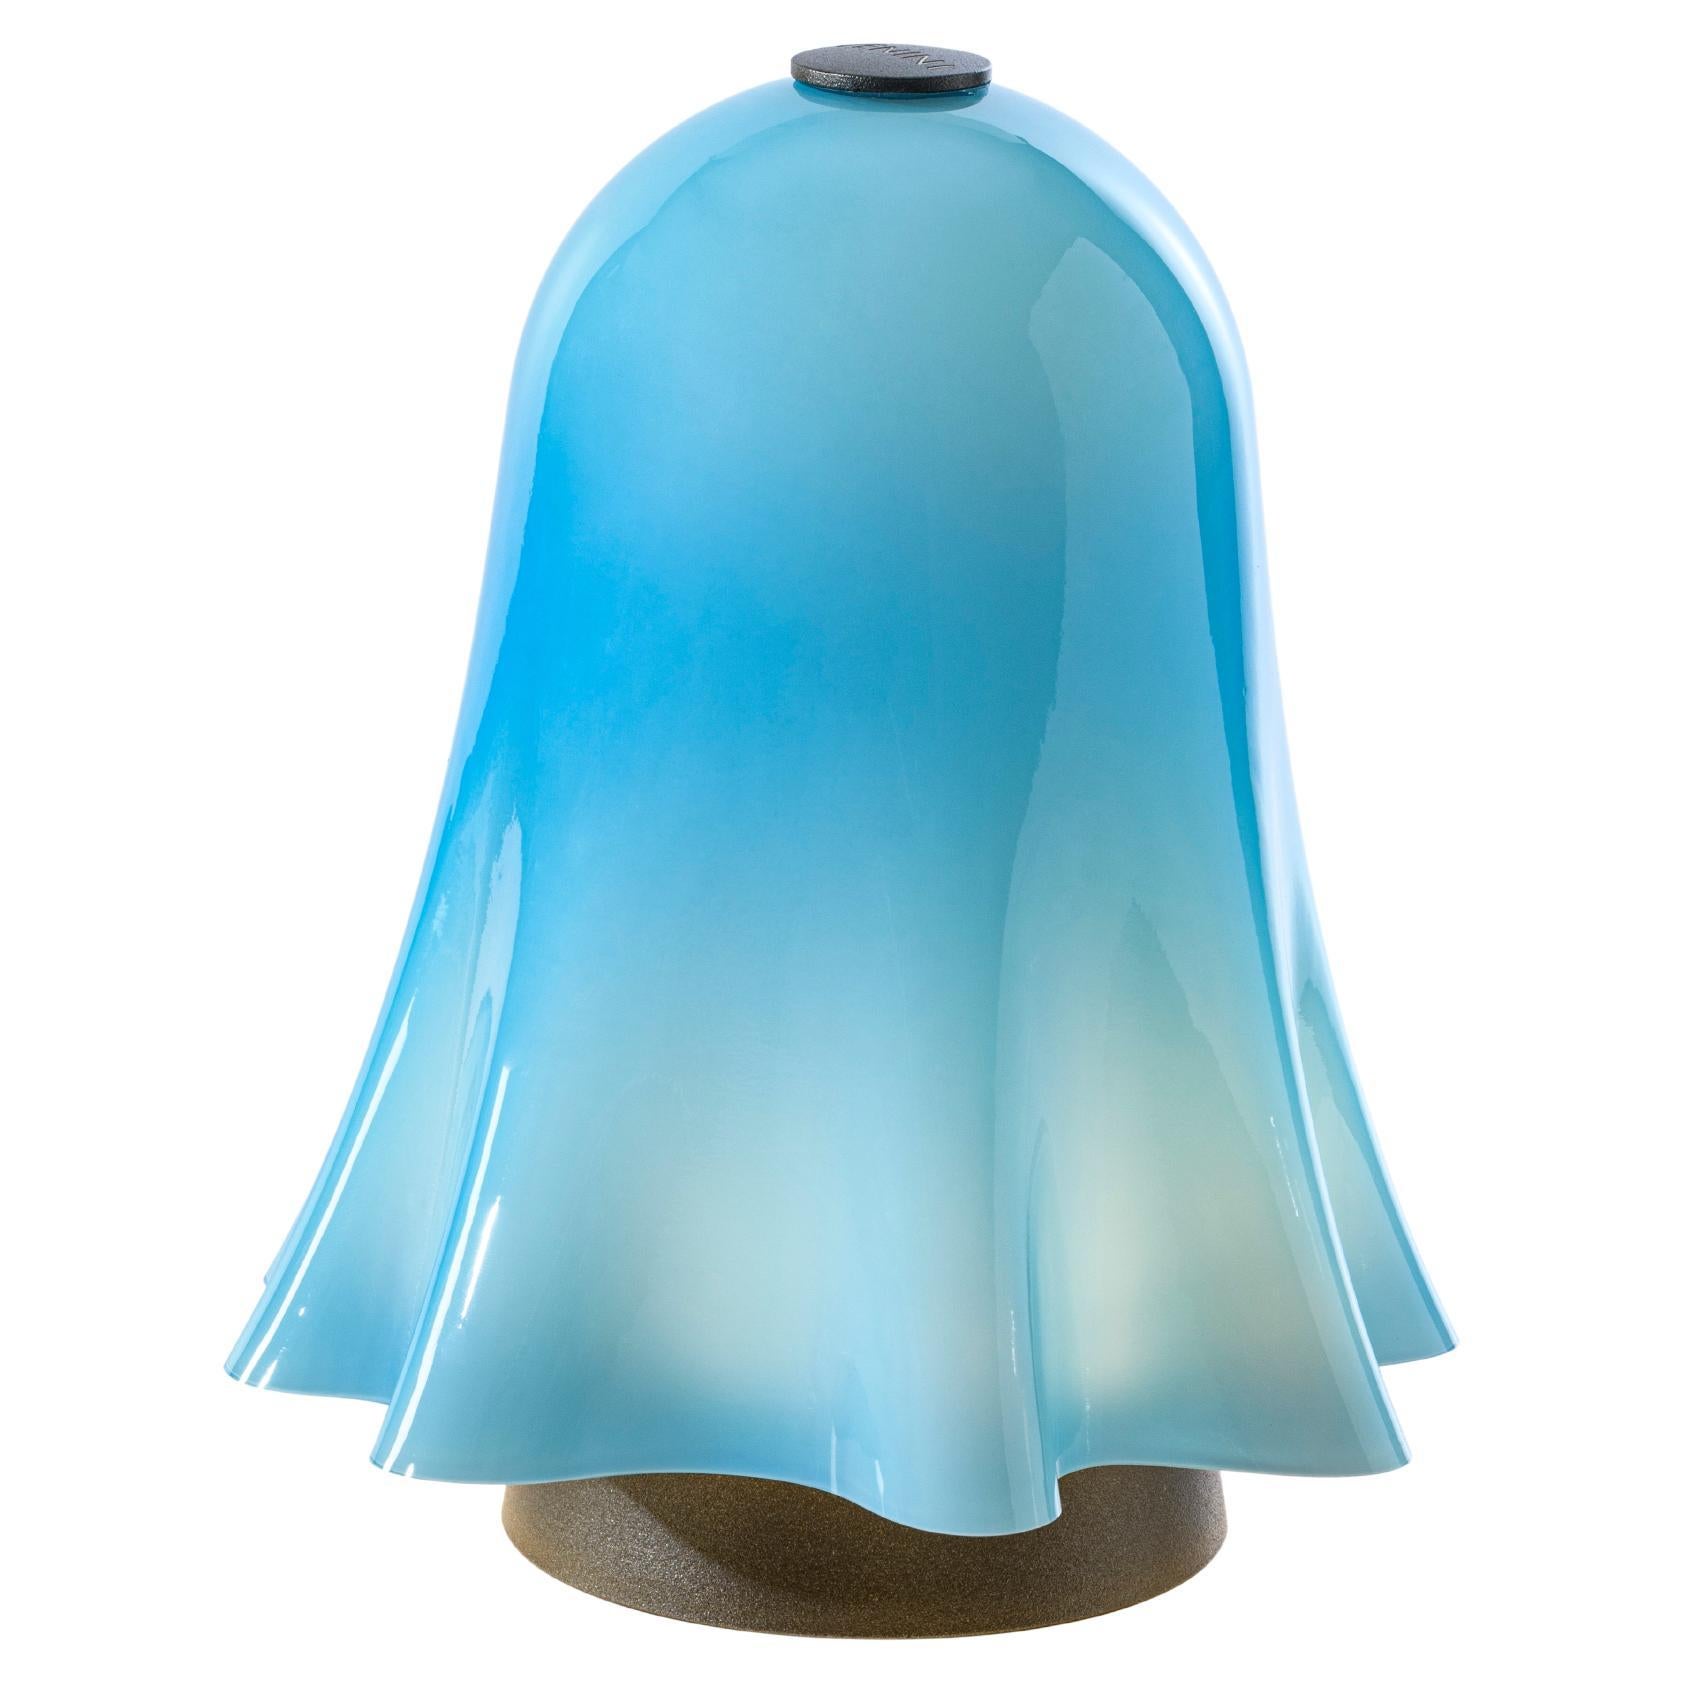 Fantasmino-Tischlampe aus dem 21. Jahrhundert, abnehmbar, schwenkbar, Aquamarin 